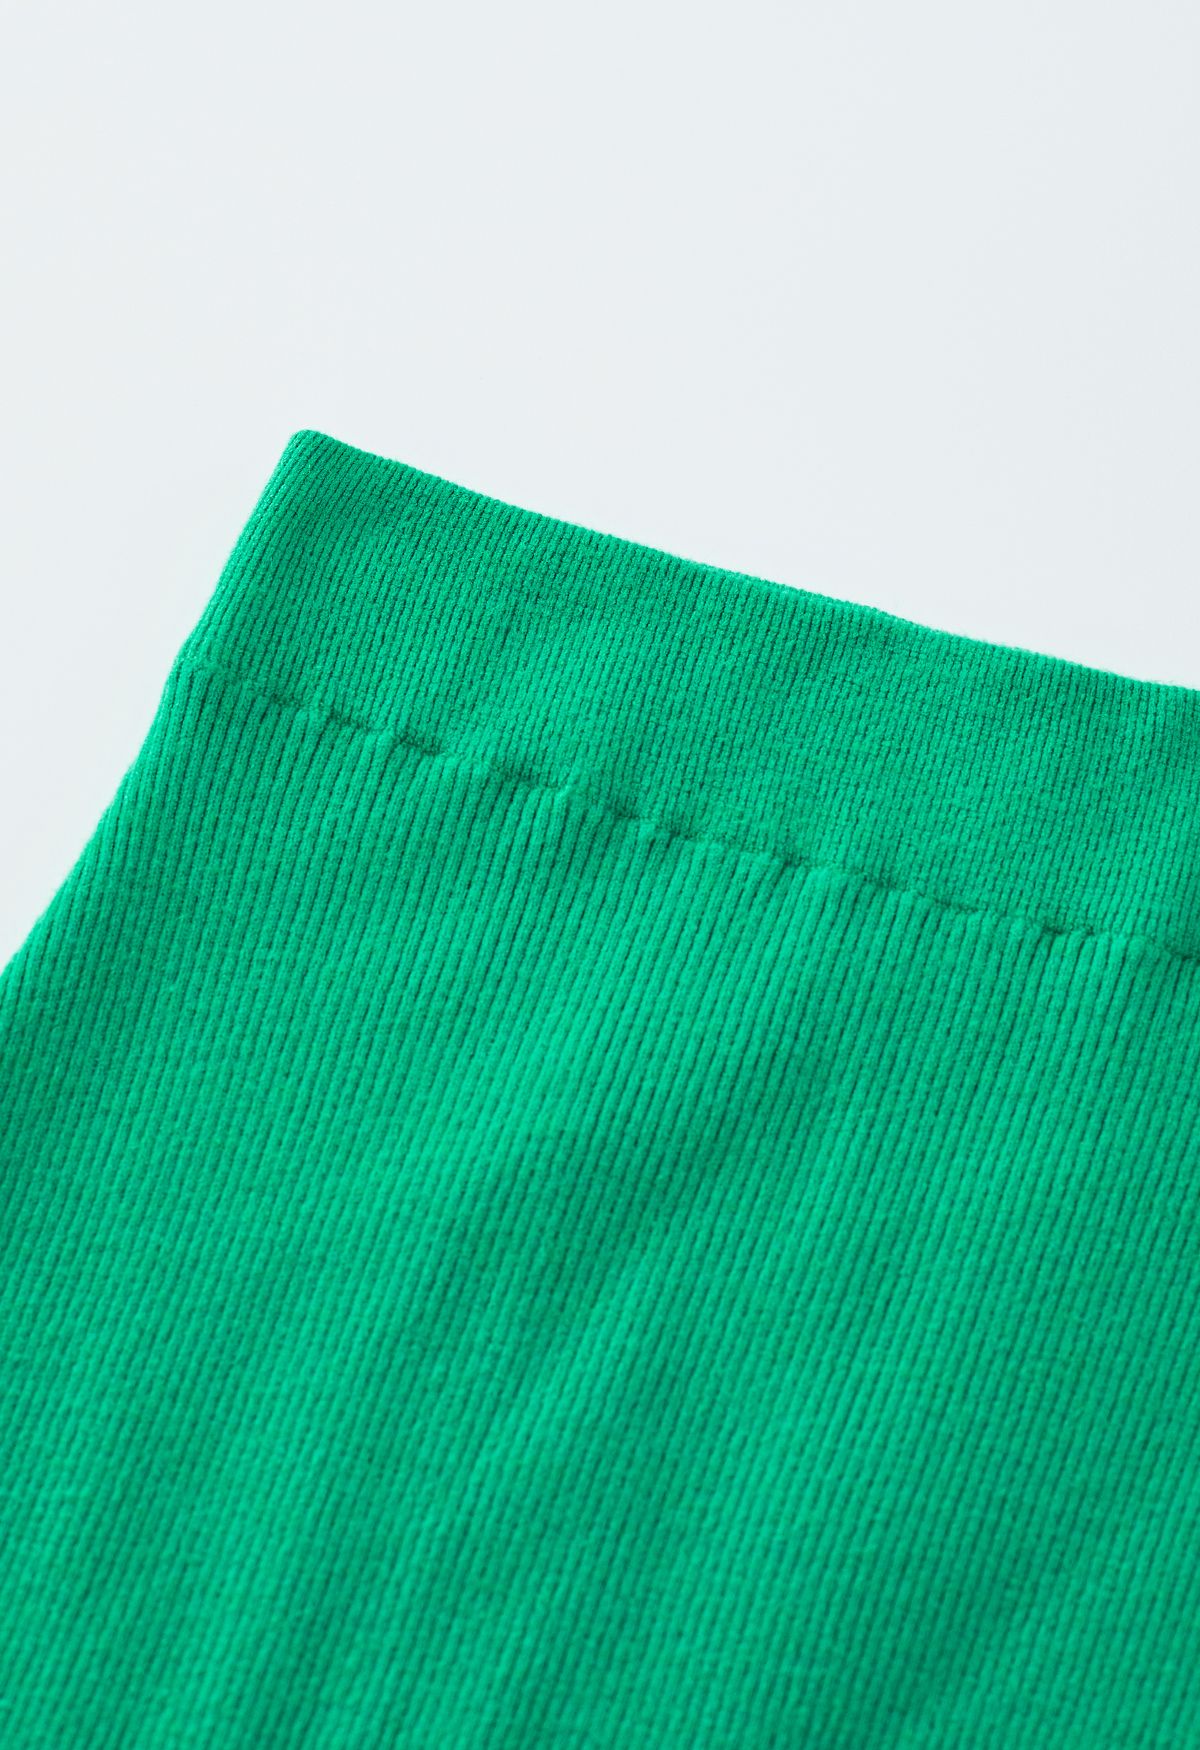 Conjunto de top corto de punto y falda larga con abertura alta en verde